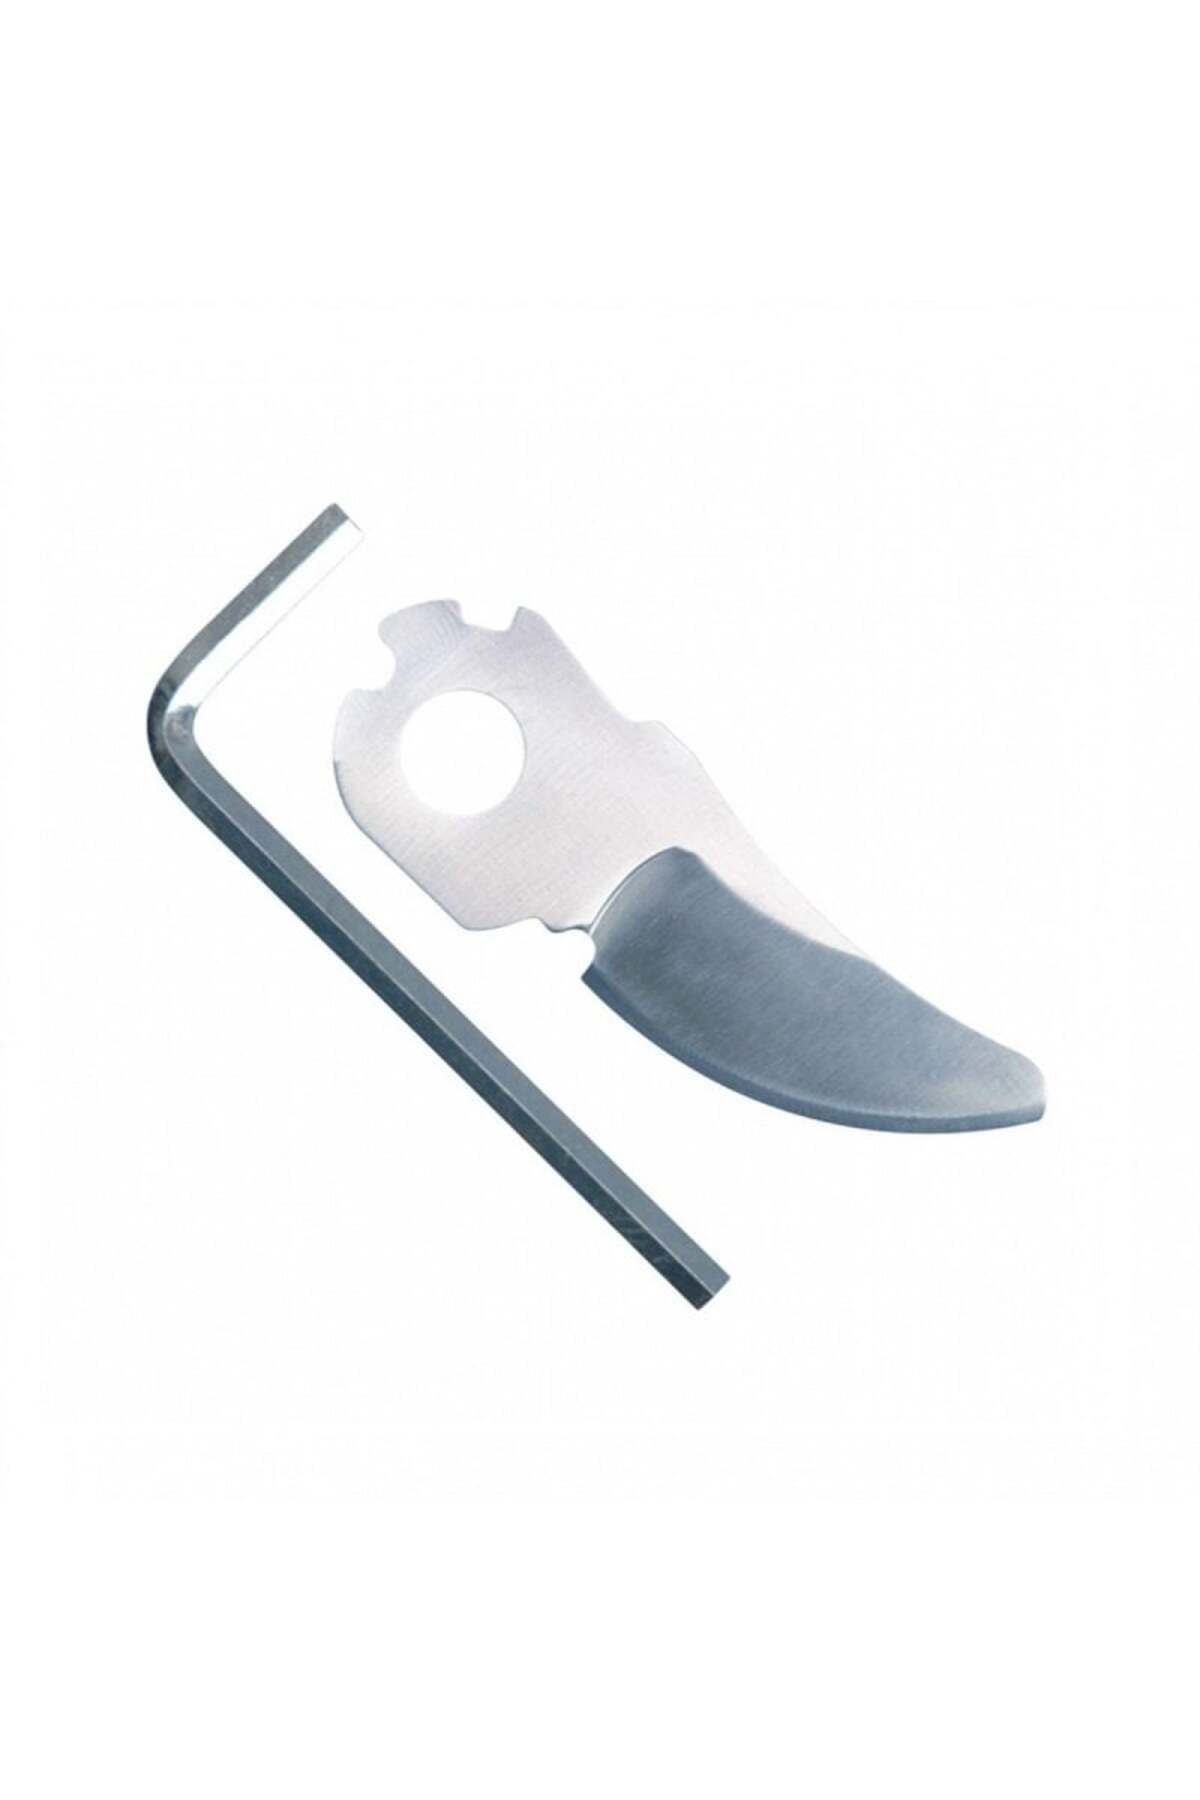 Bosch EasyPrune Akülü Bağ Makası İçin Yedek Bıçak